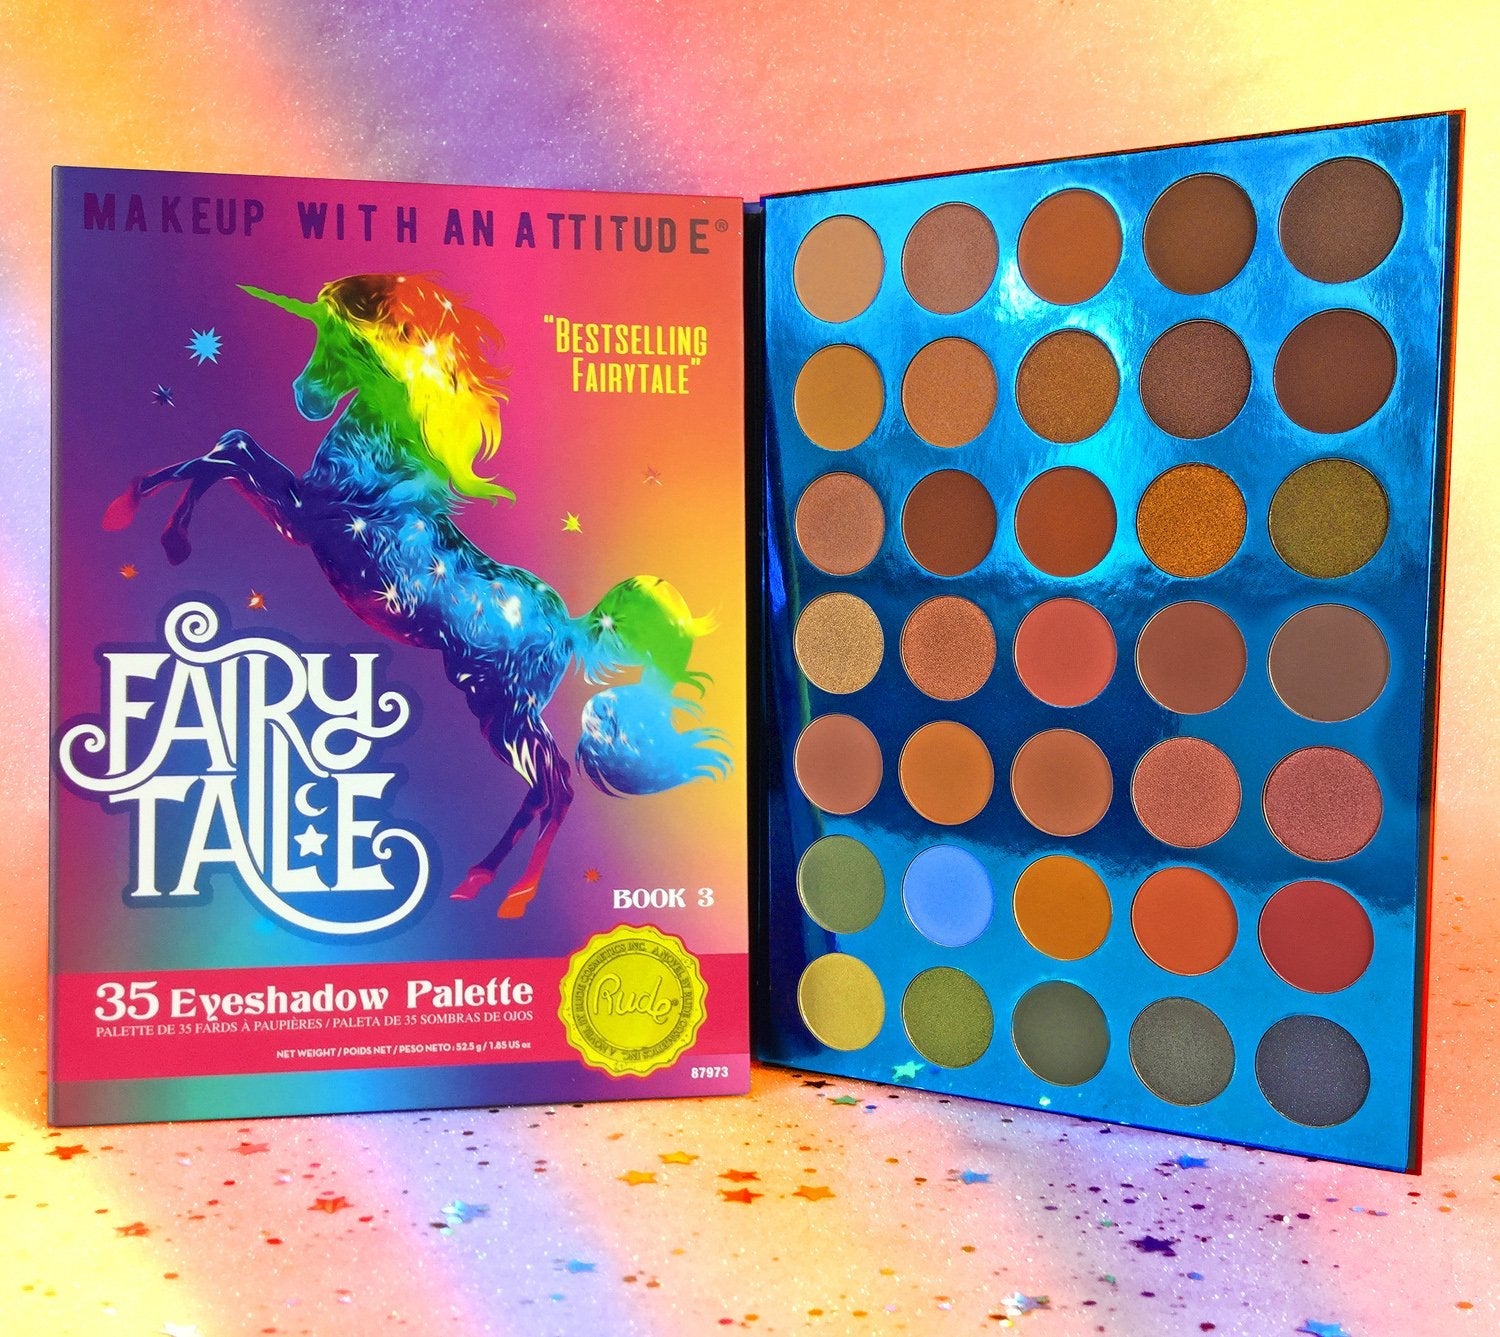 RUDE Fairy Tales 35 Eyeshadow Palette - Book 3